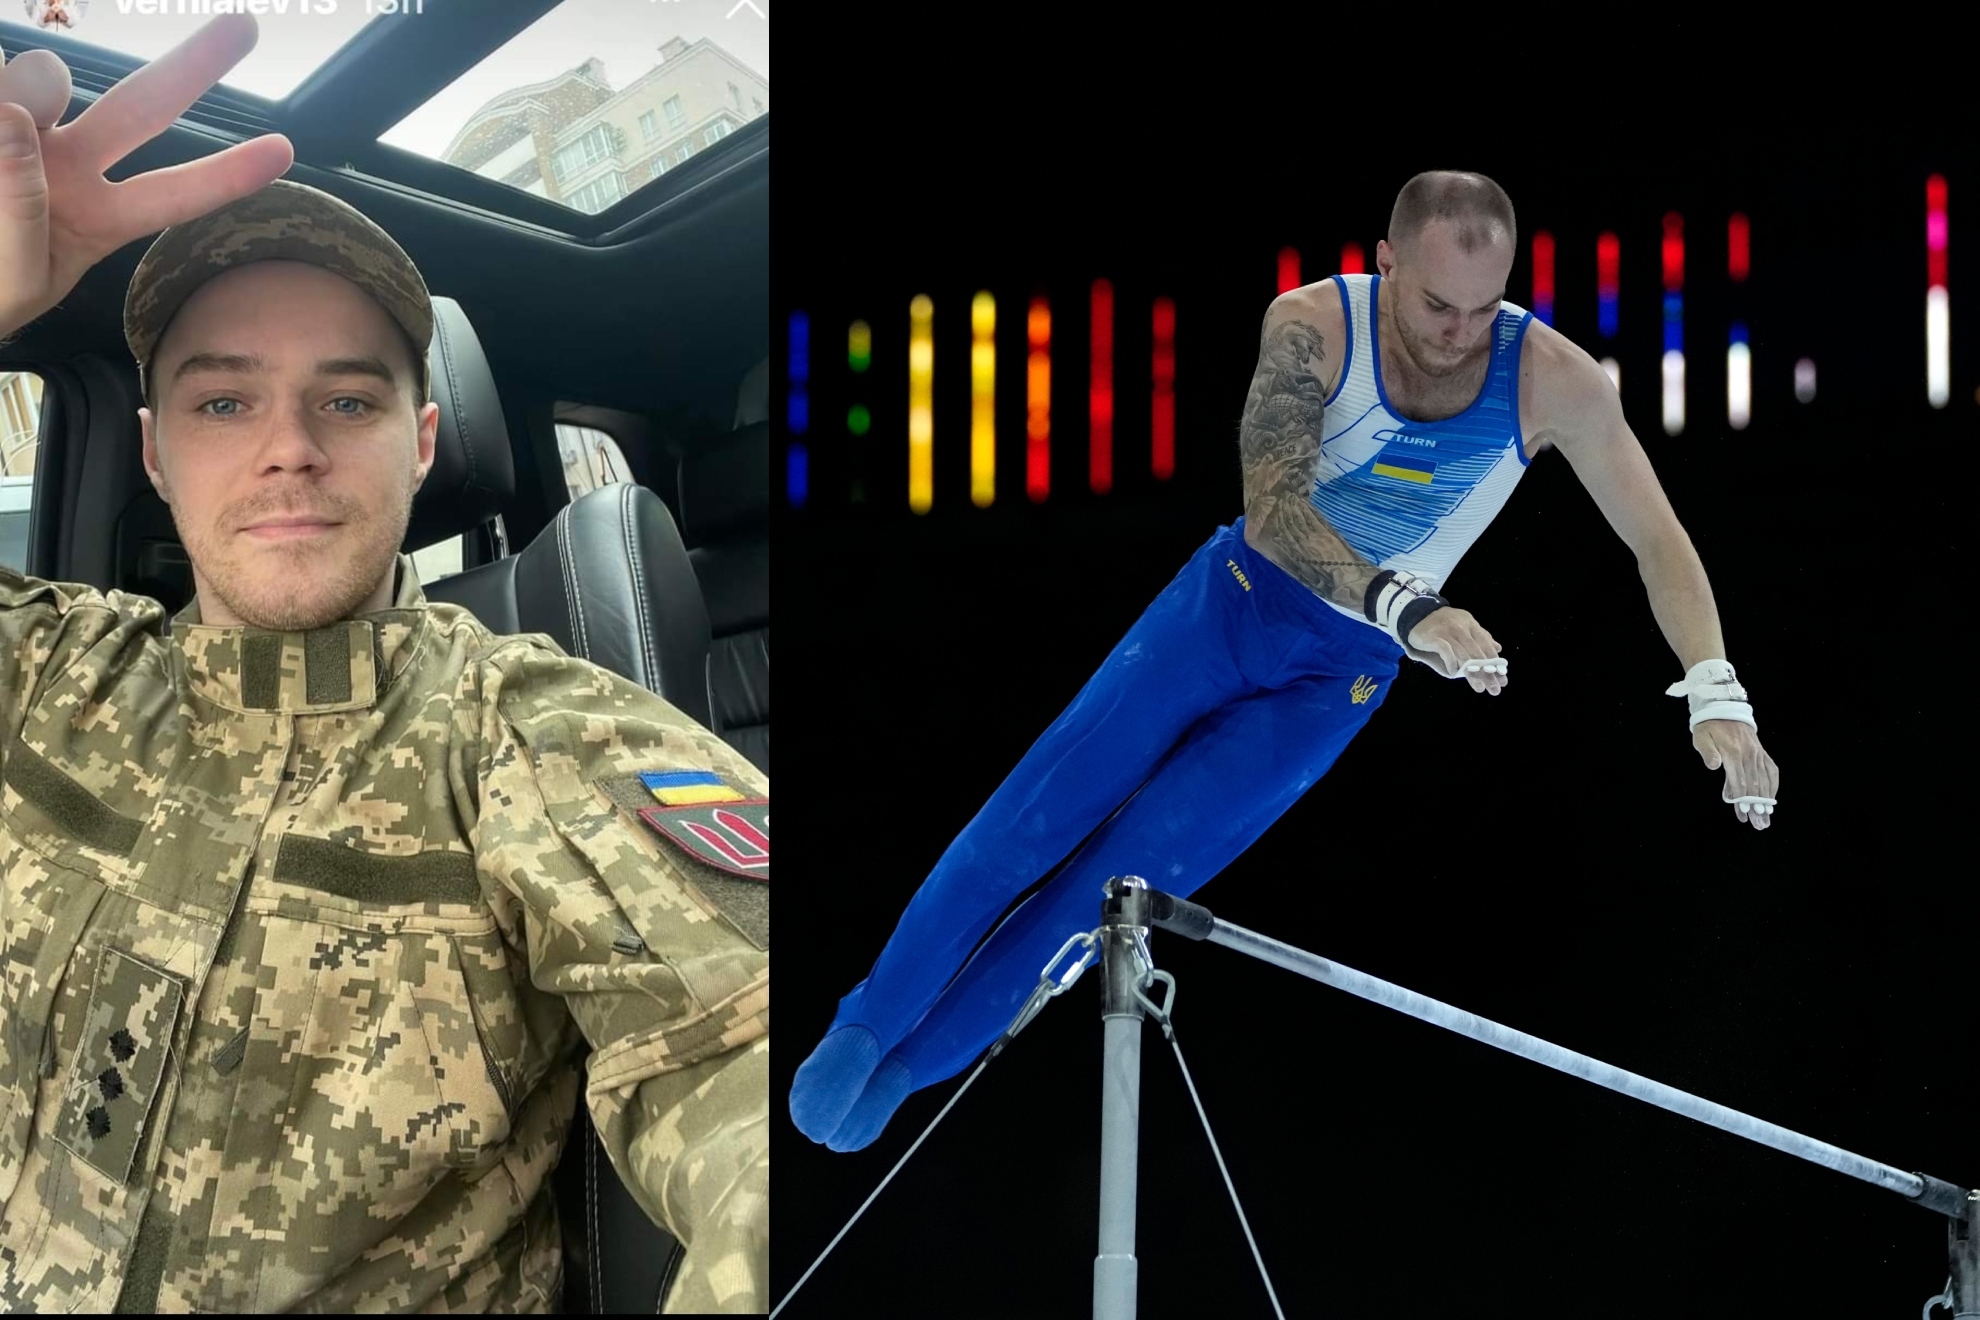 Oleg Verniaiev, a la izquierda con el uniforme del ejército ucraniano, y a la derecha, en los Mundiales